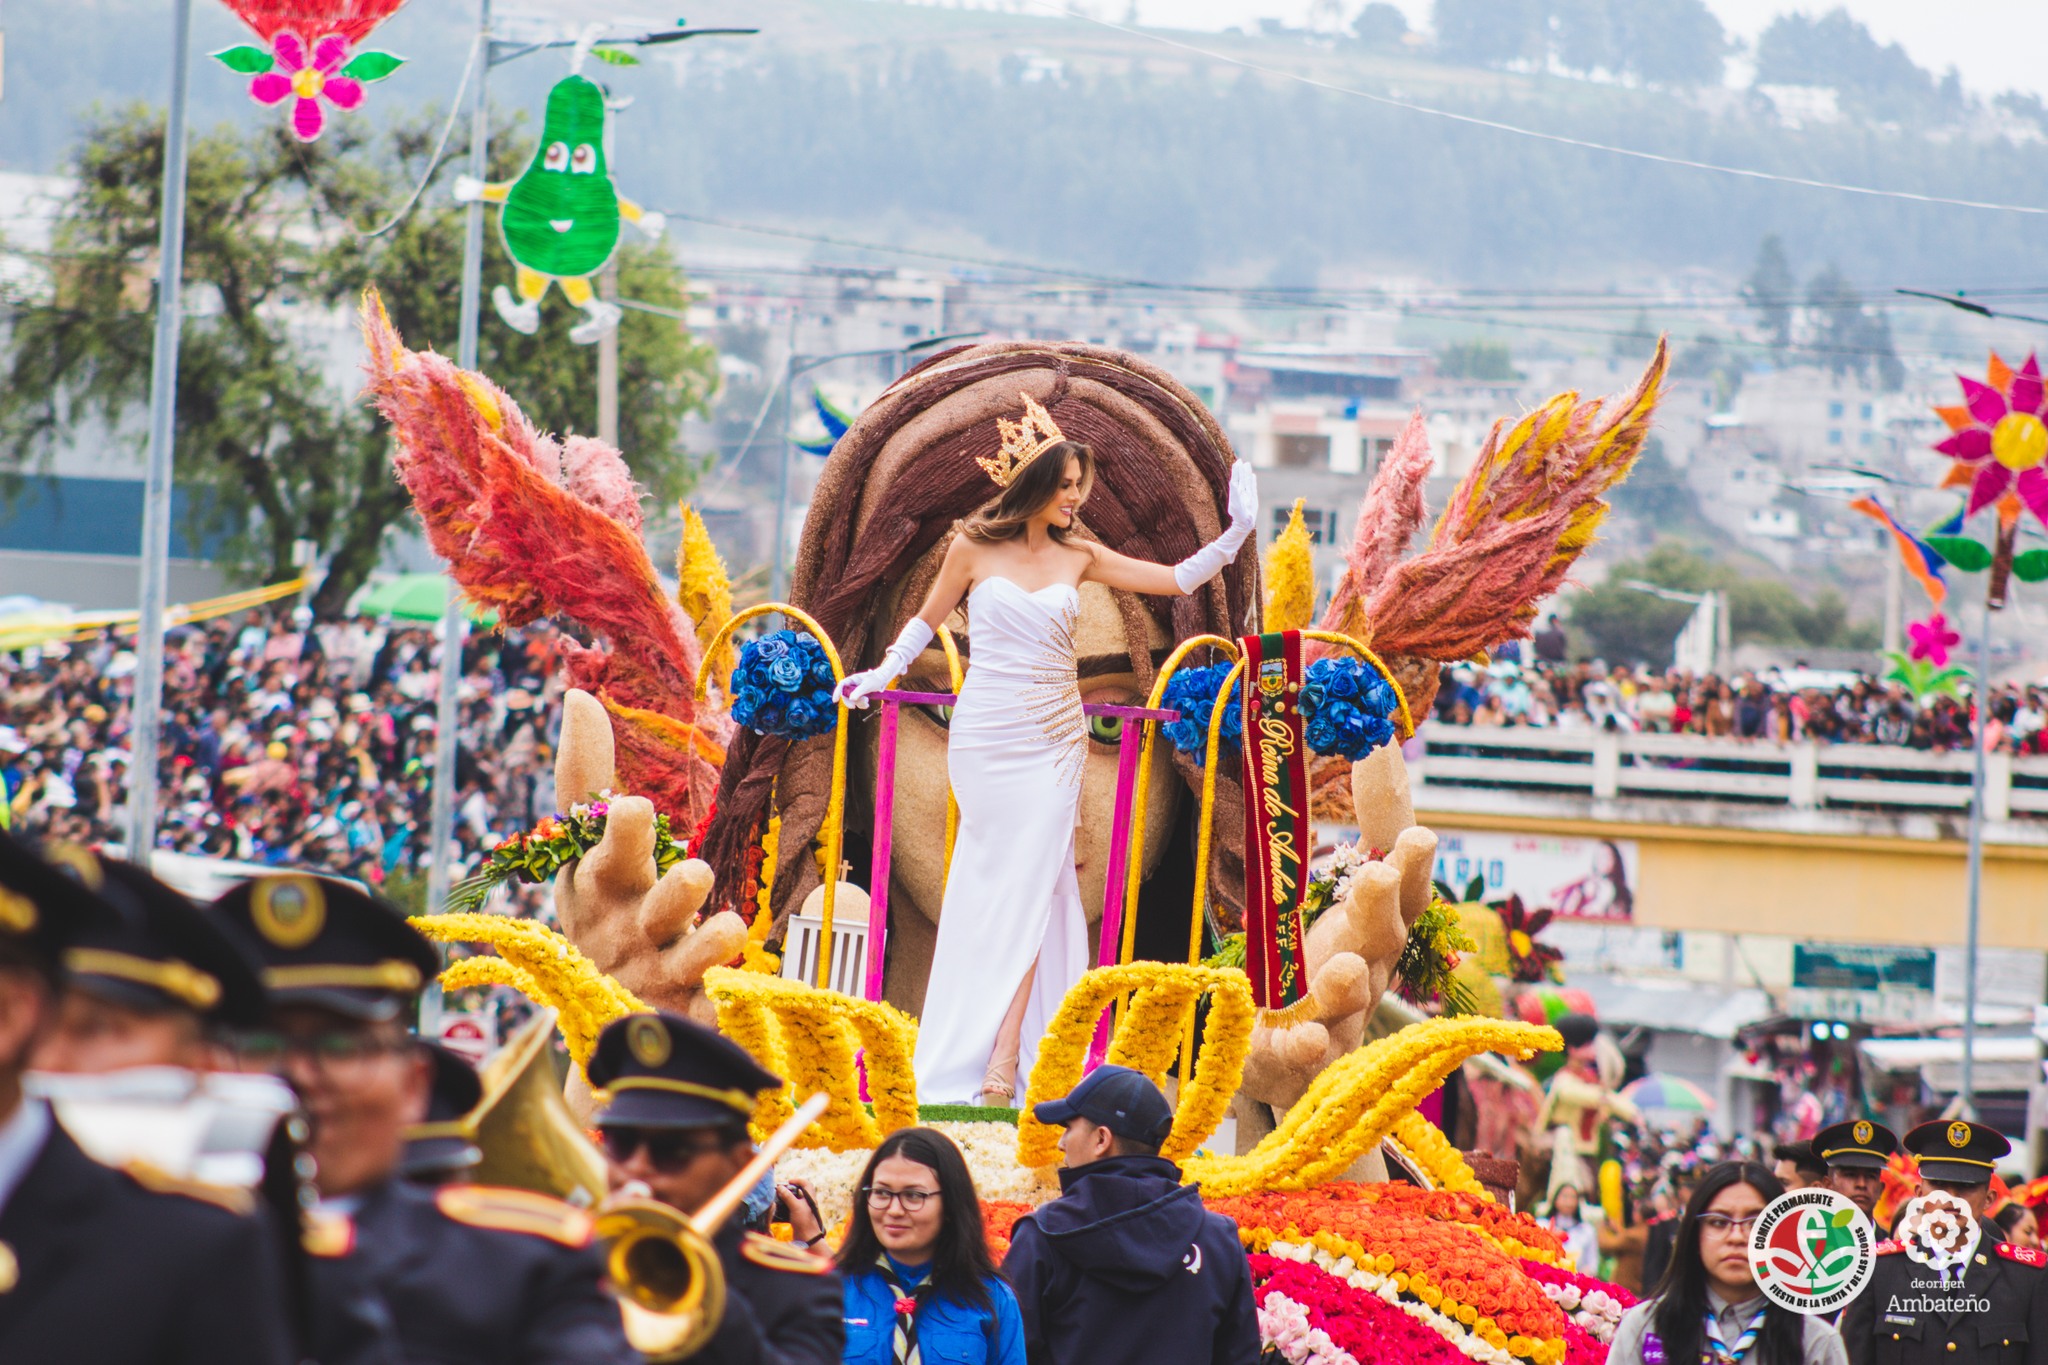 La nueva Reina de Ambato será elegida durante la Fiesta de la Fruta y de las Flores.